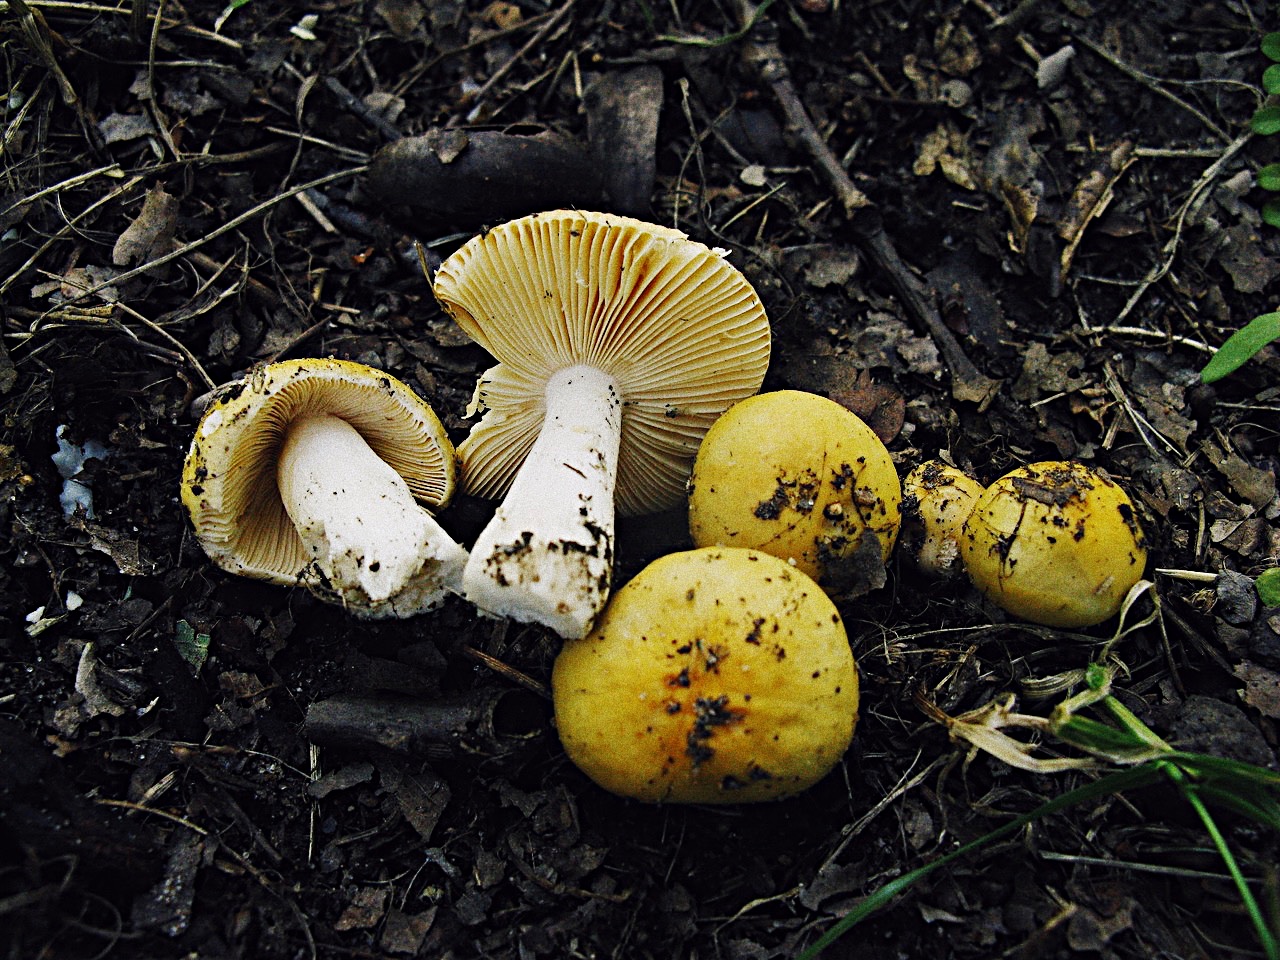 Сыроежка золотистая (russula aurea) – грибы сибири